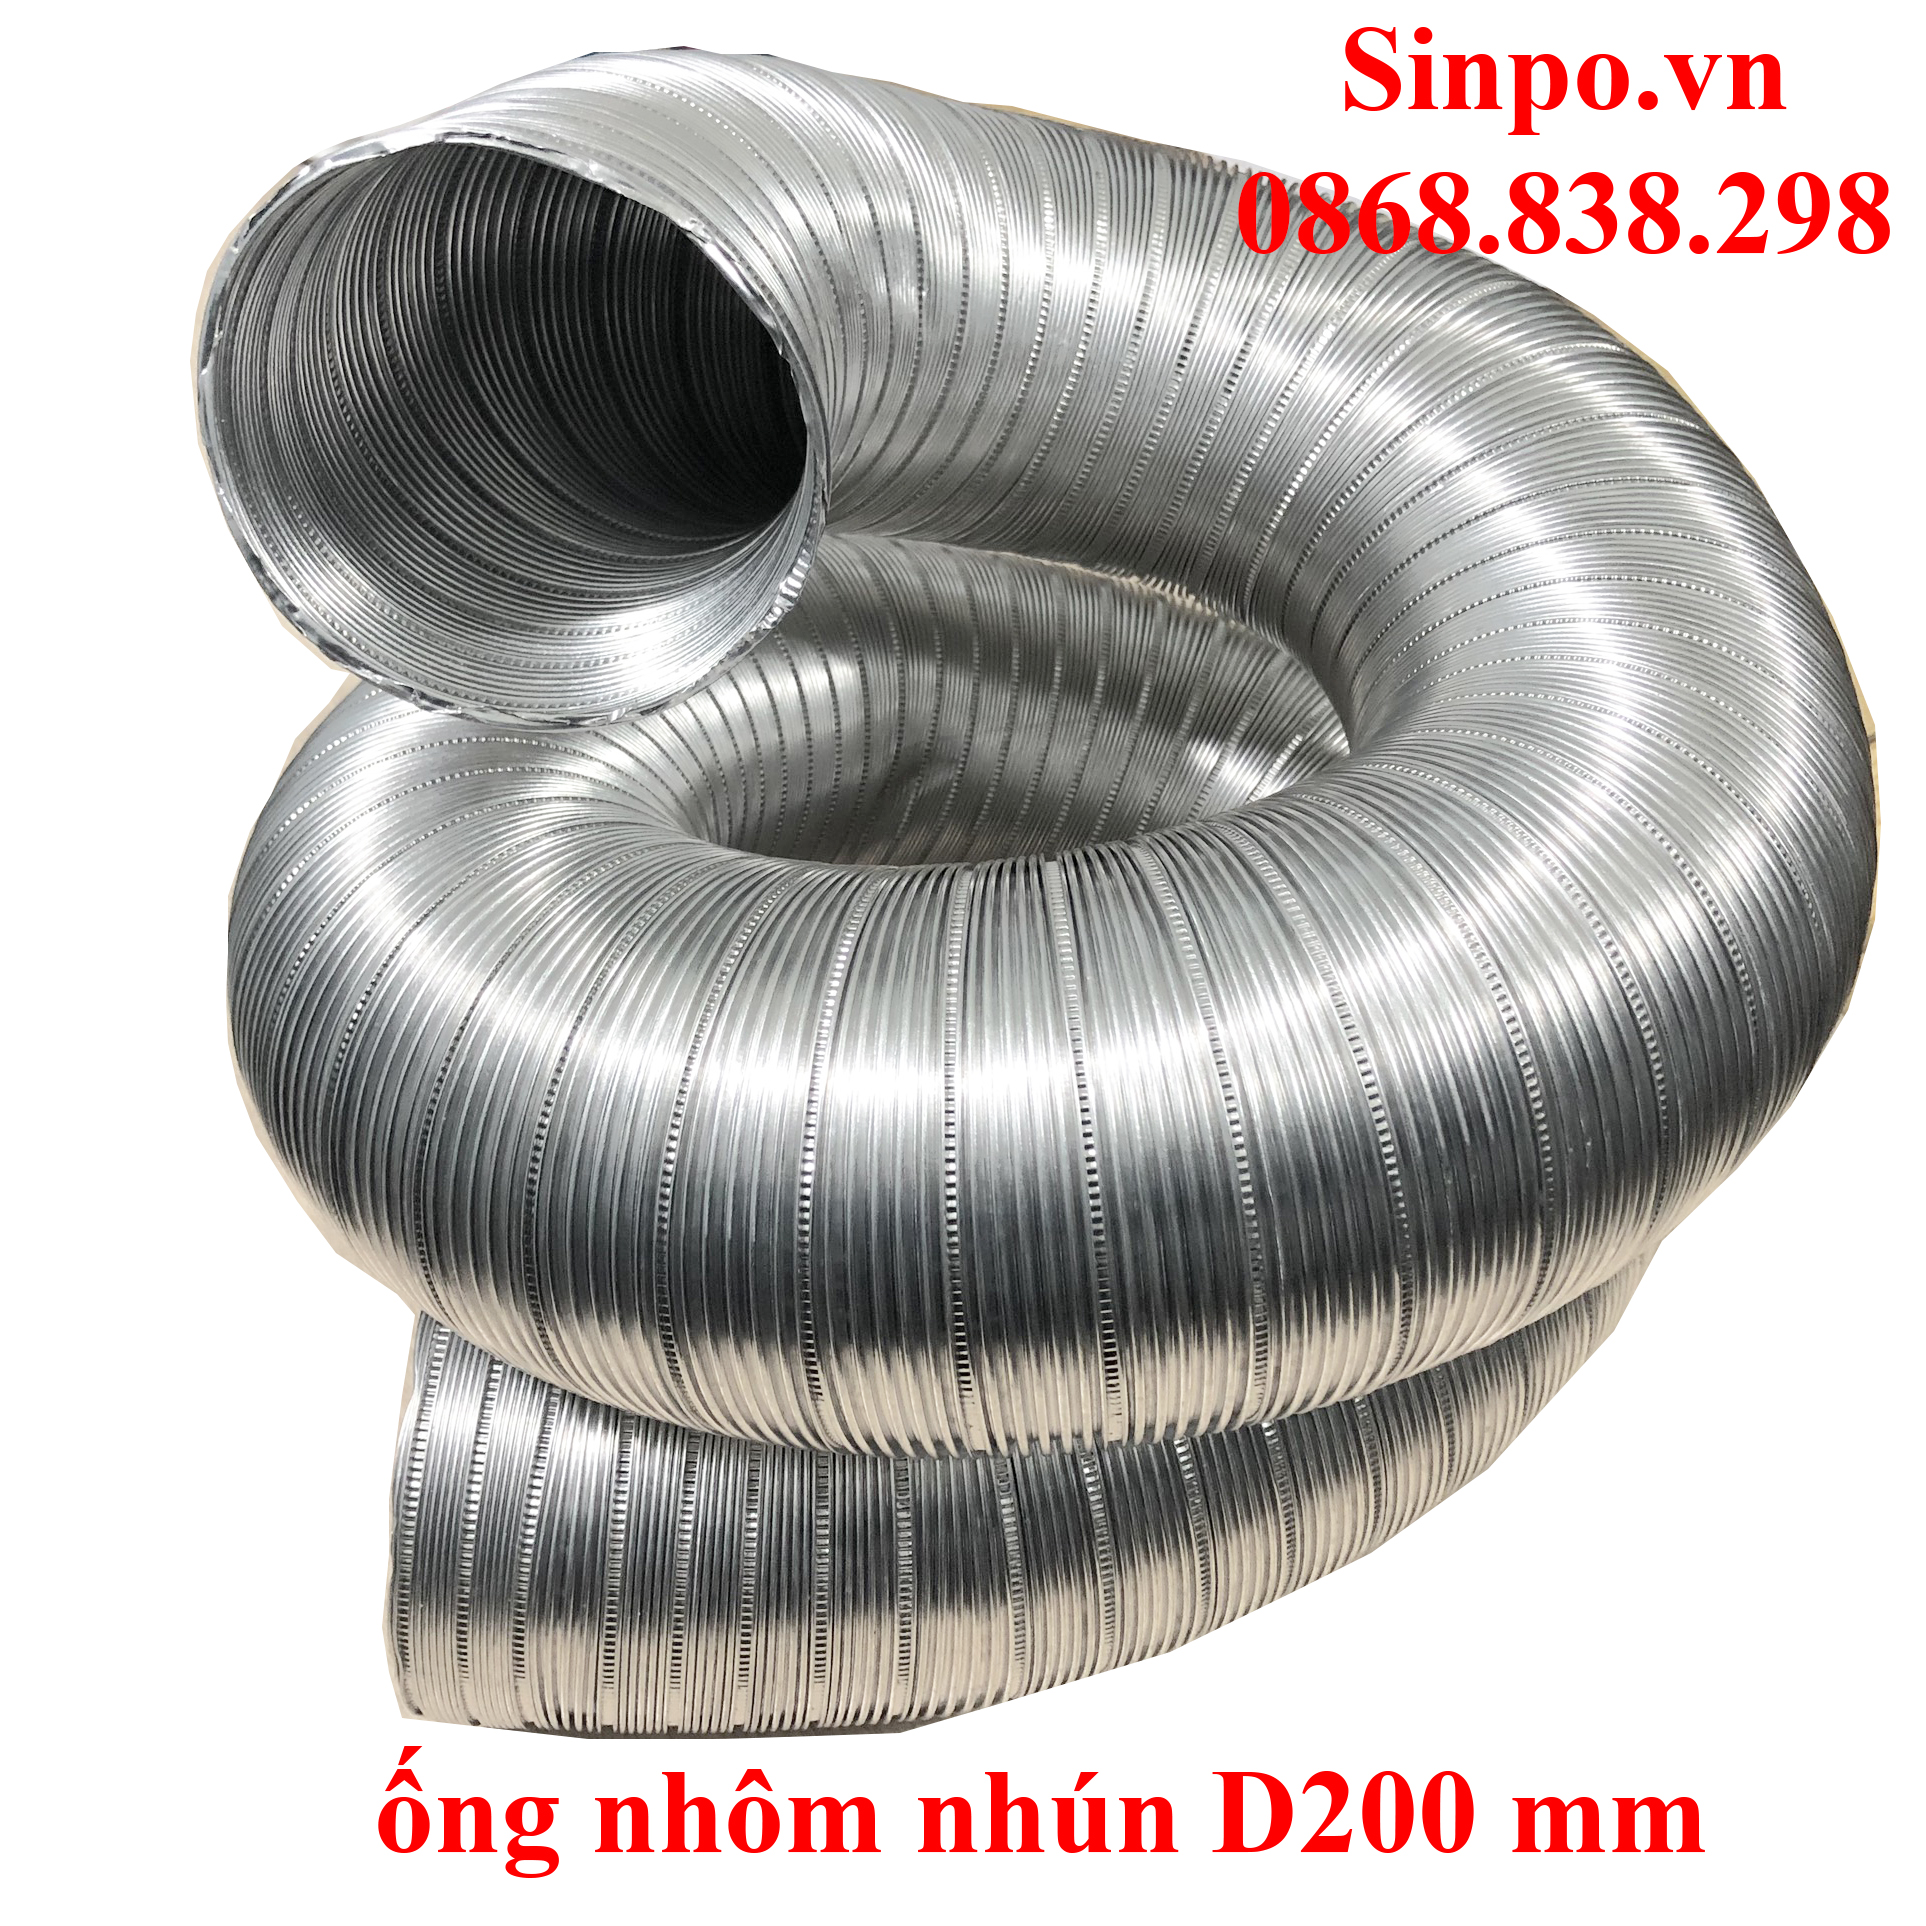 Chuyên bán ống nhôm nhún D200 mm giá rẻ tại Hà Nội